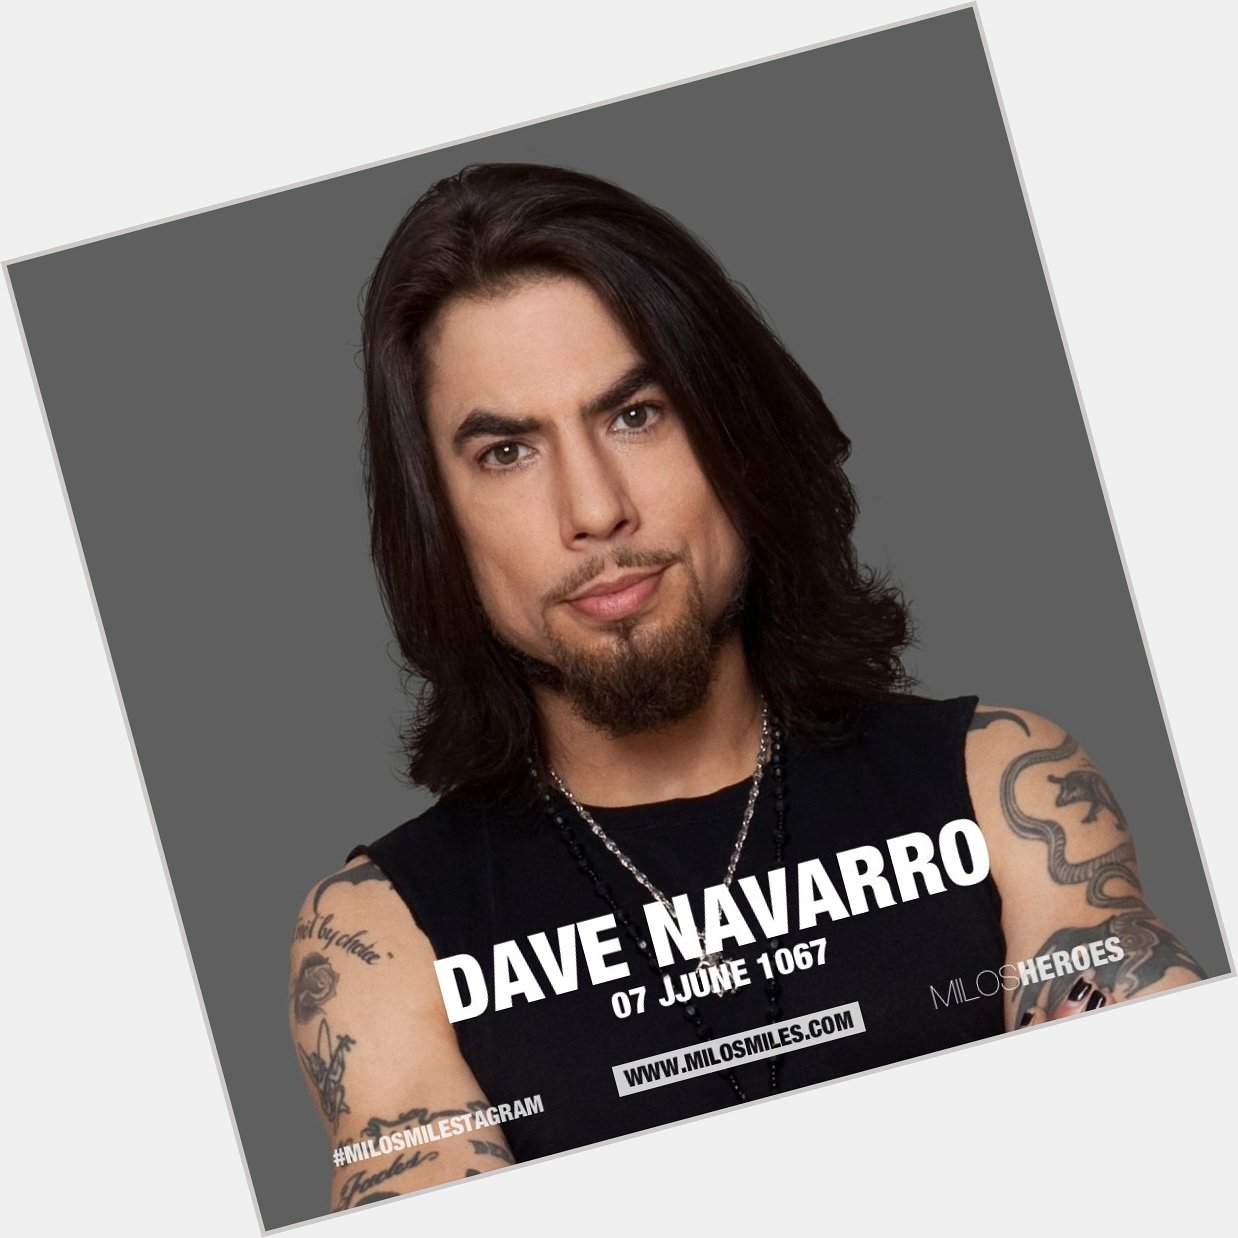 Happy Birthday Dave Navarro (070667) 